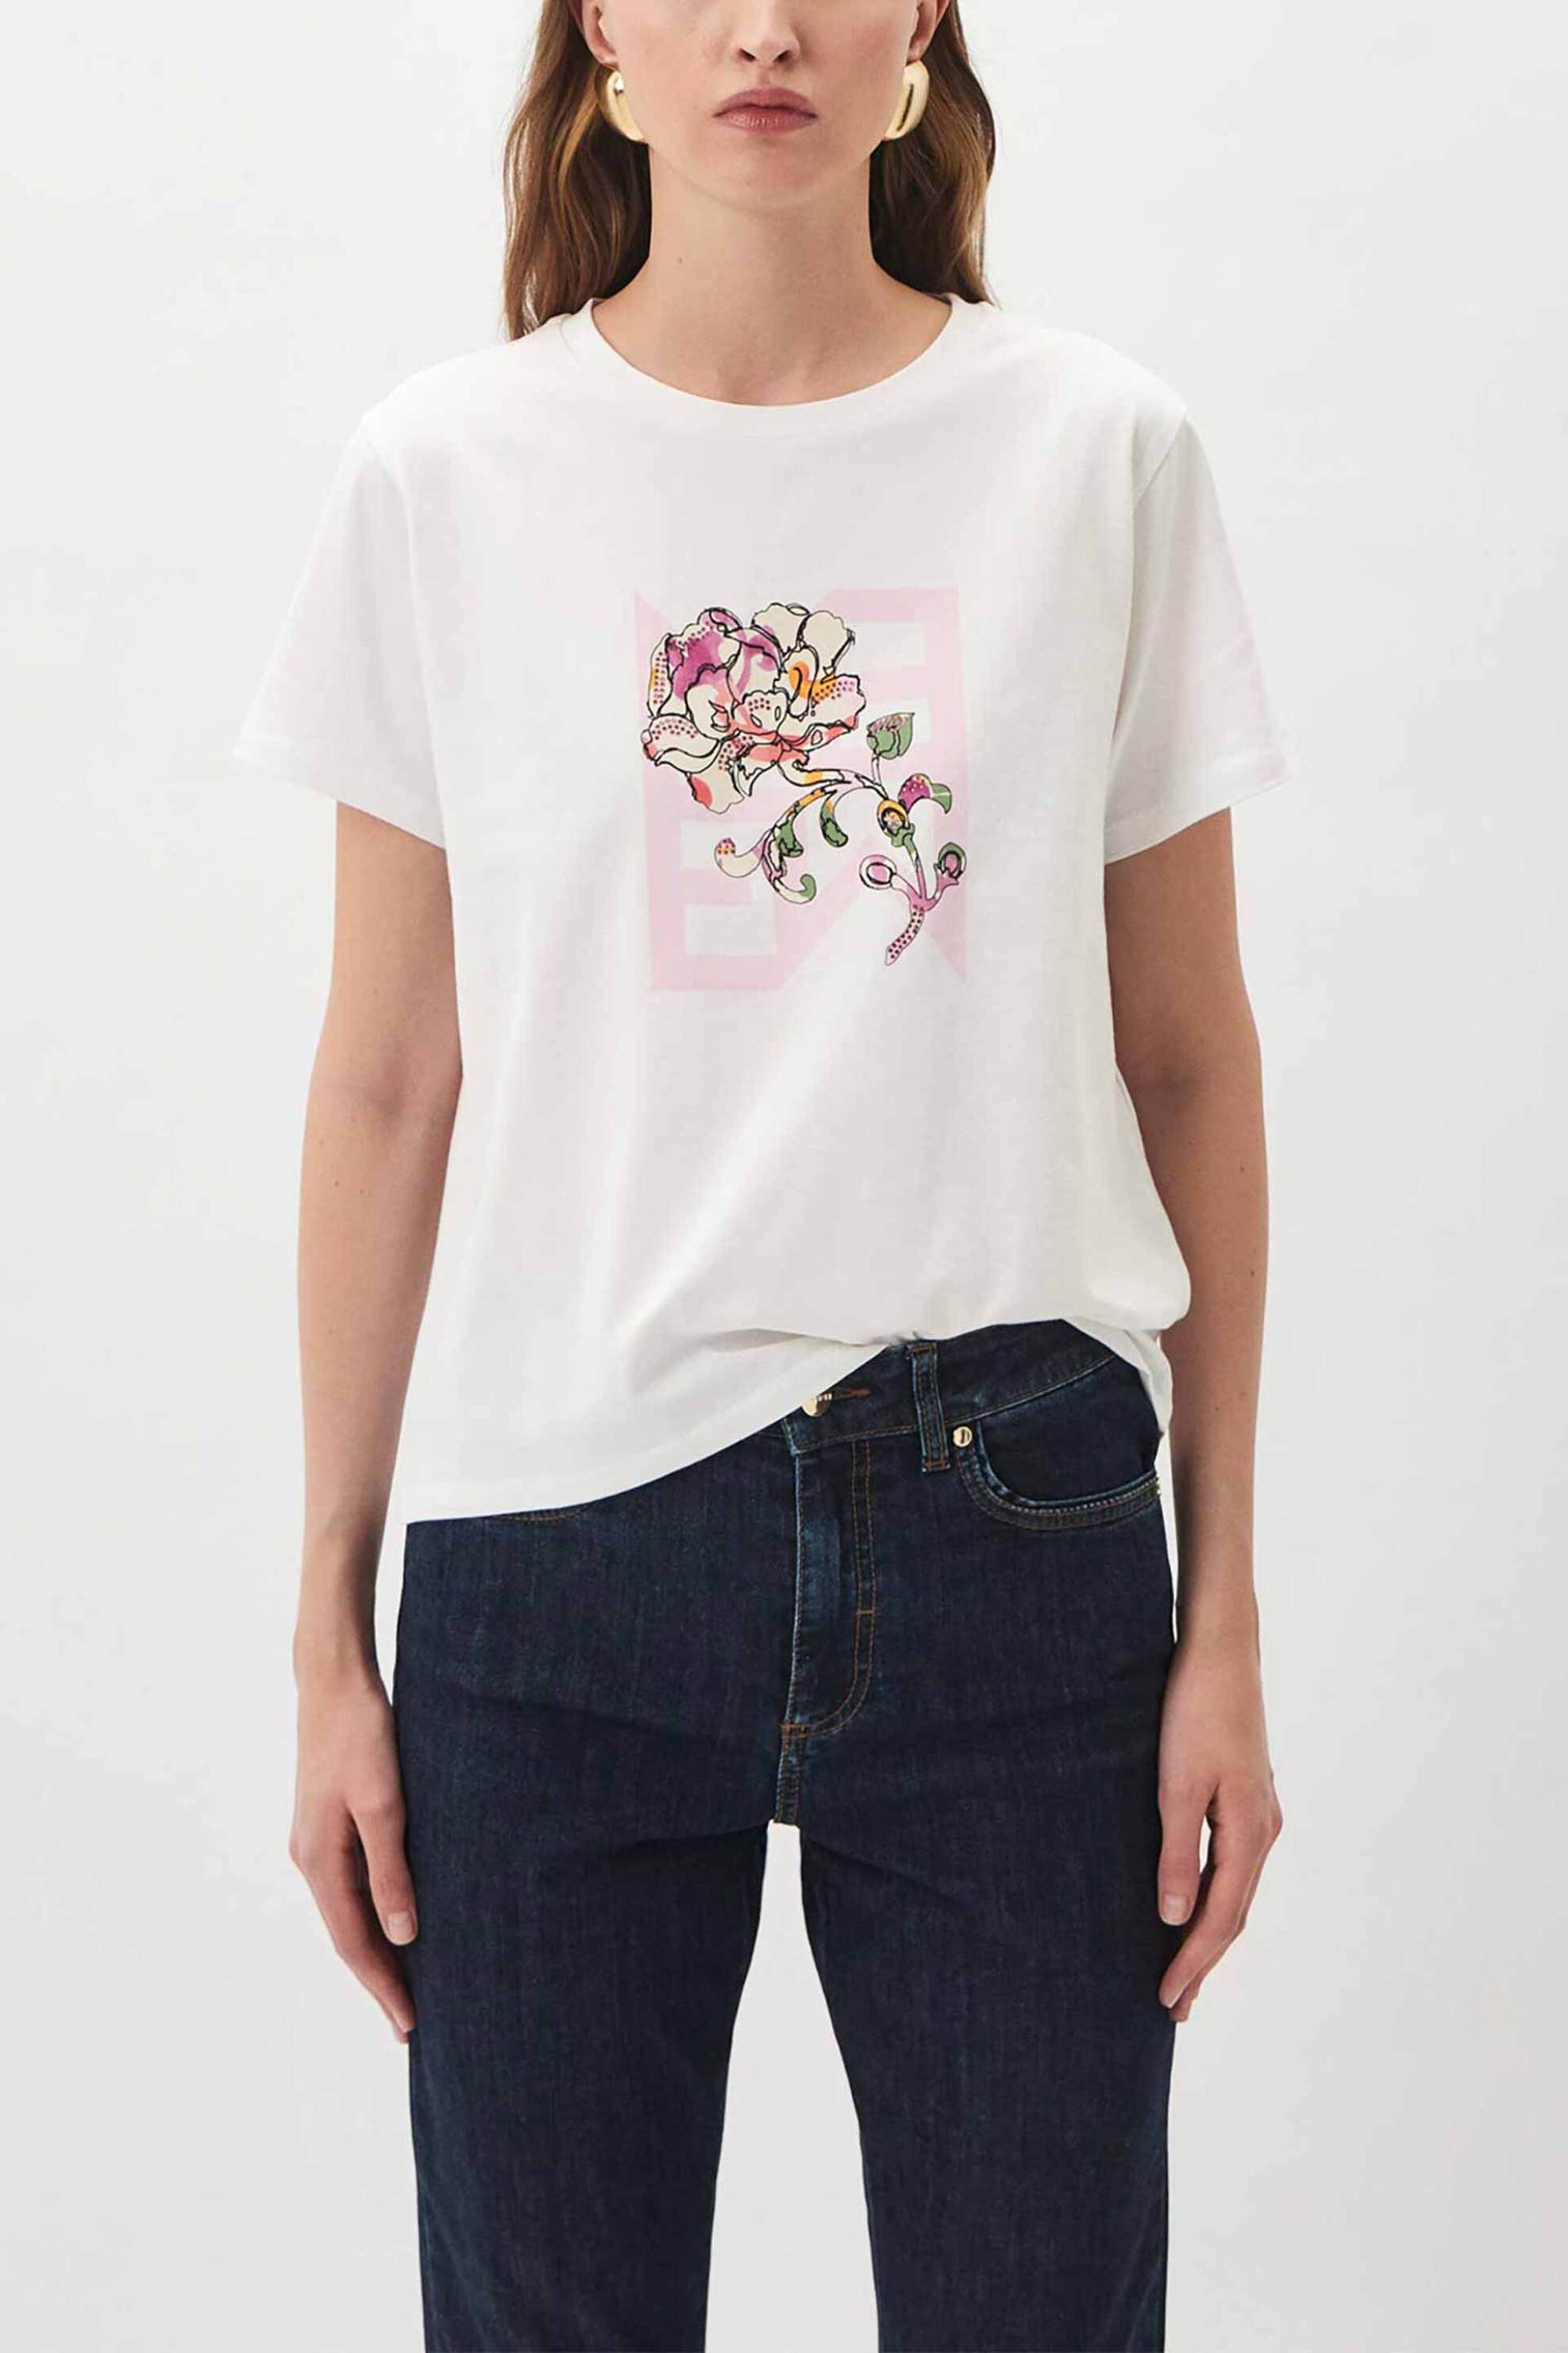 Γυναικεία Ρούχα & Αξεσουάρ > Γυναικεία Ρούχα > Γυναικεία Τοπ > Γυναικεία T-Shirts Emme by Marella γυναικείο T-shirt βαμβακερό μονόχρωμο με contrast print - 2415971121 Ροζ